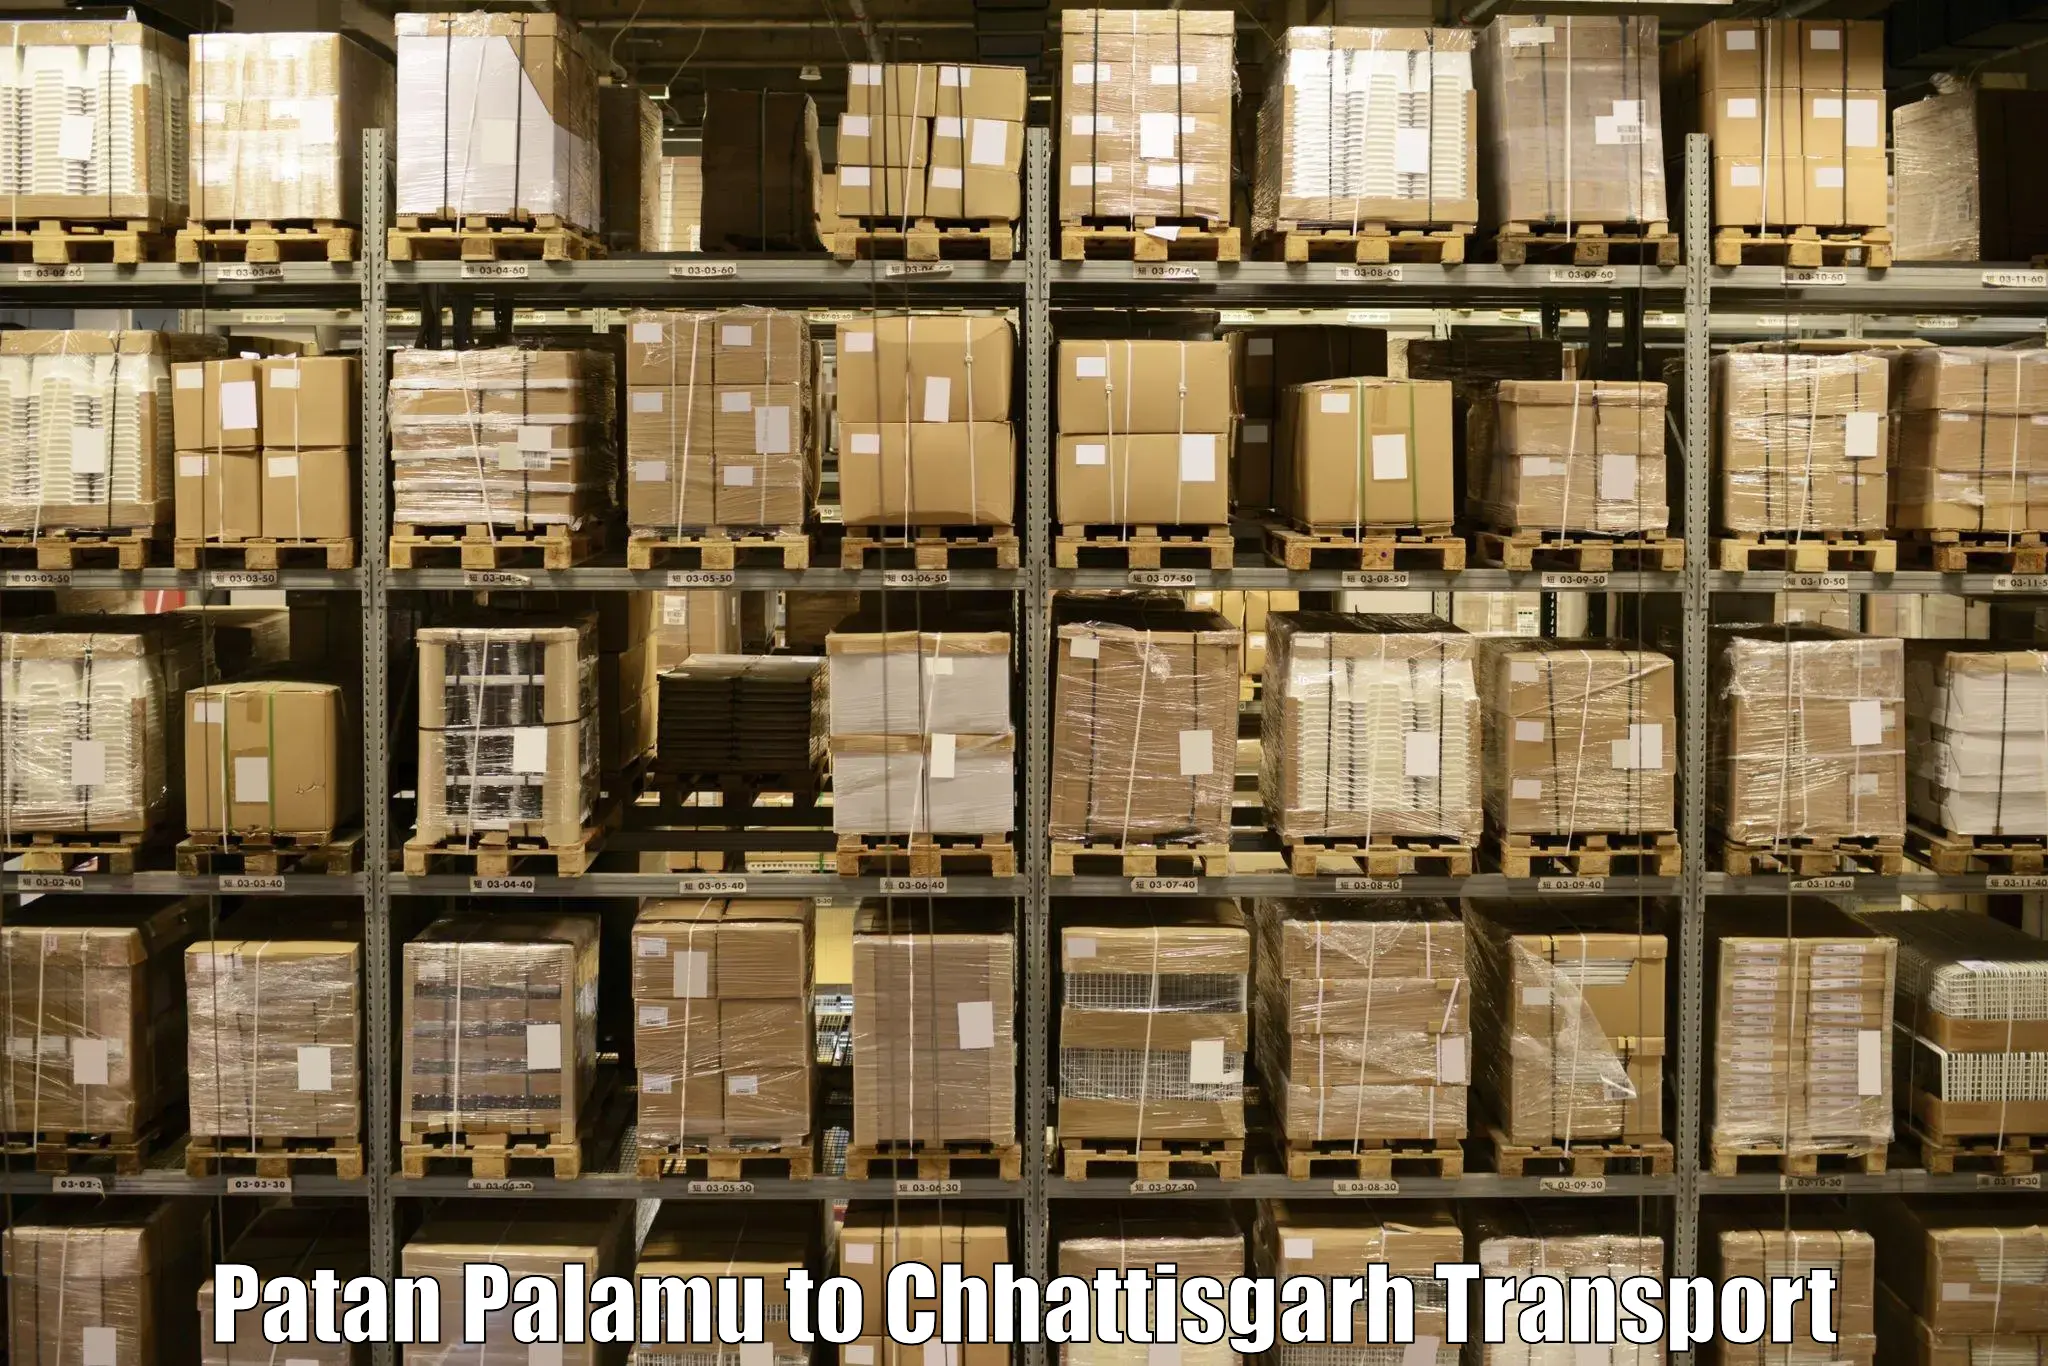 Nearby transport service Patan Palamu to Gariaband